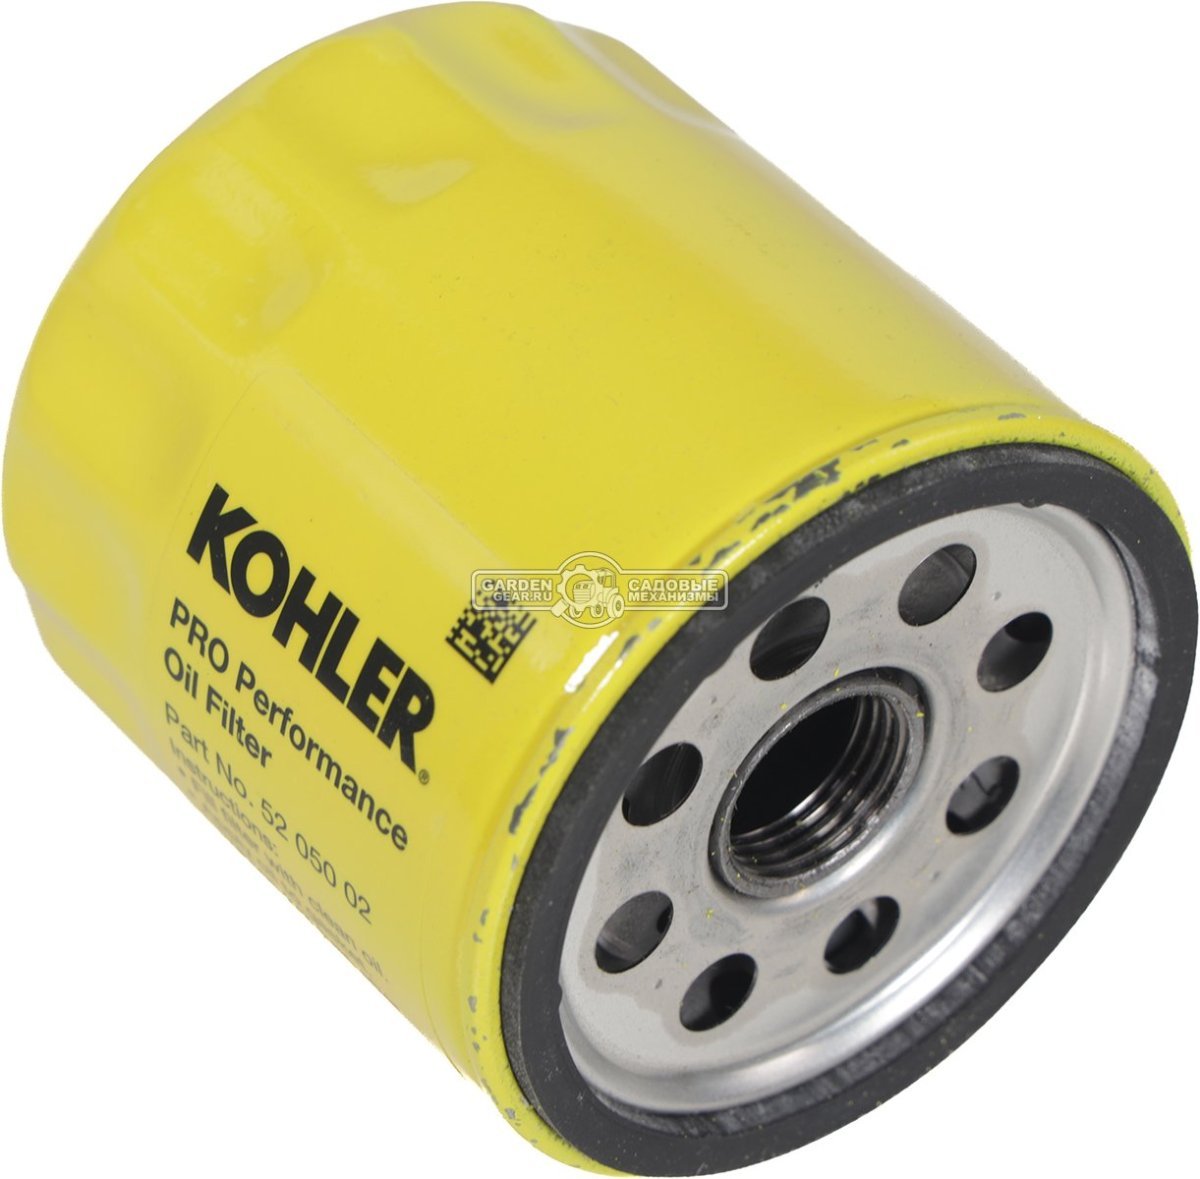 Фильтр масляный Kohler для двигателей серий CH / CV / EC / SV / LH